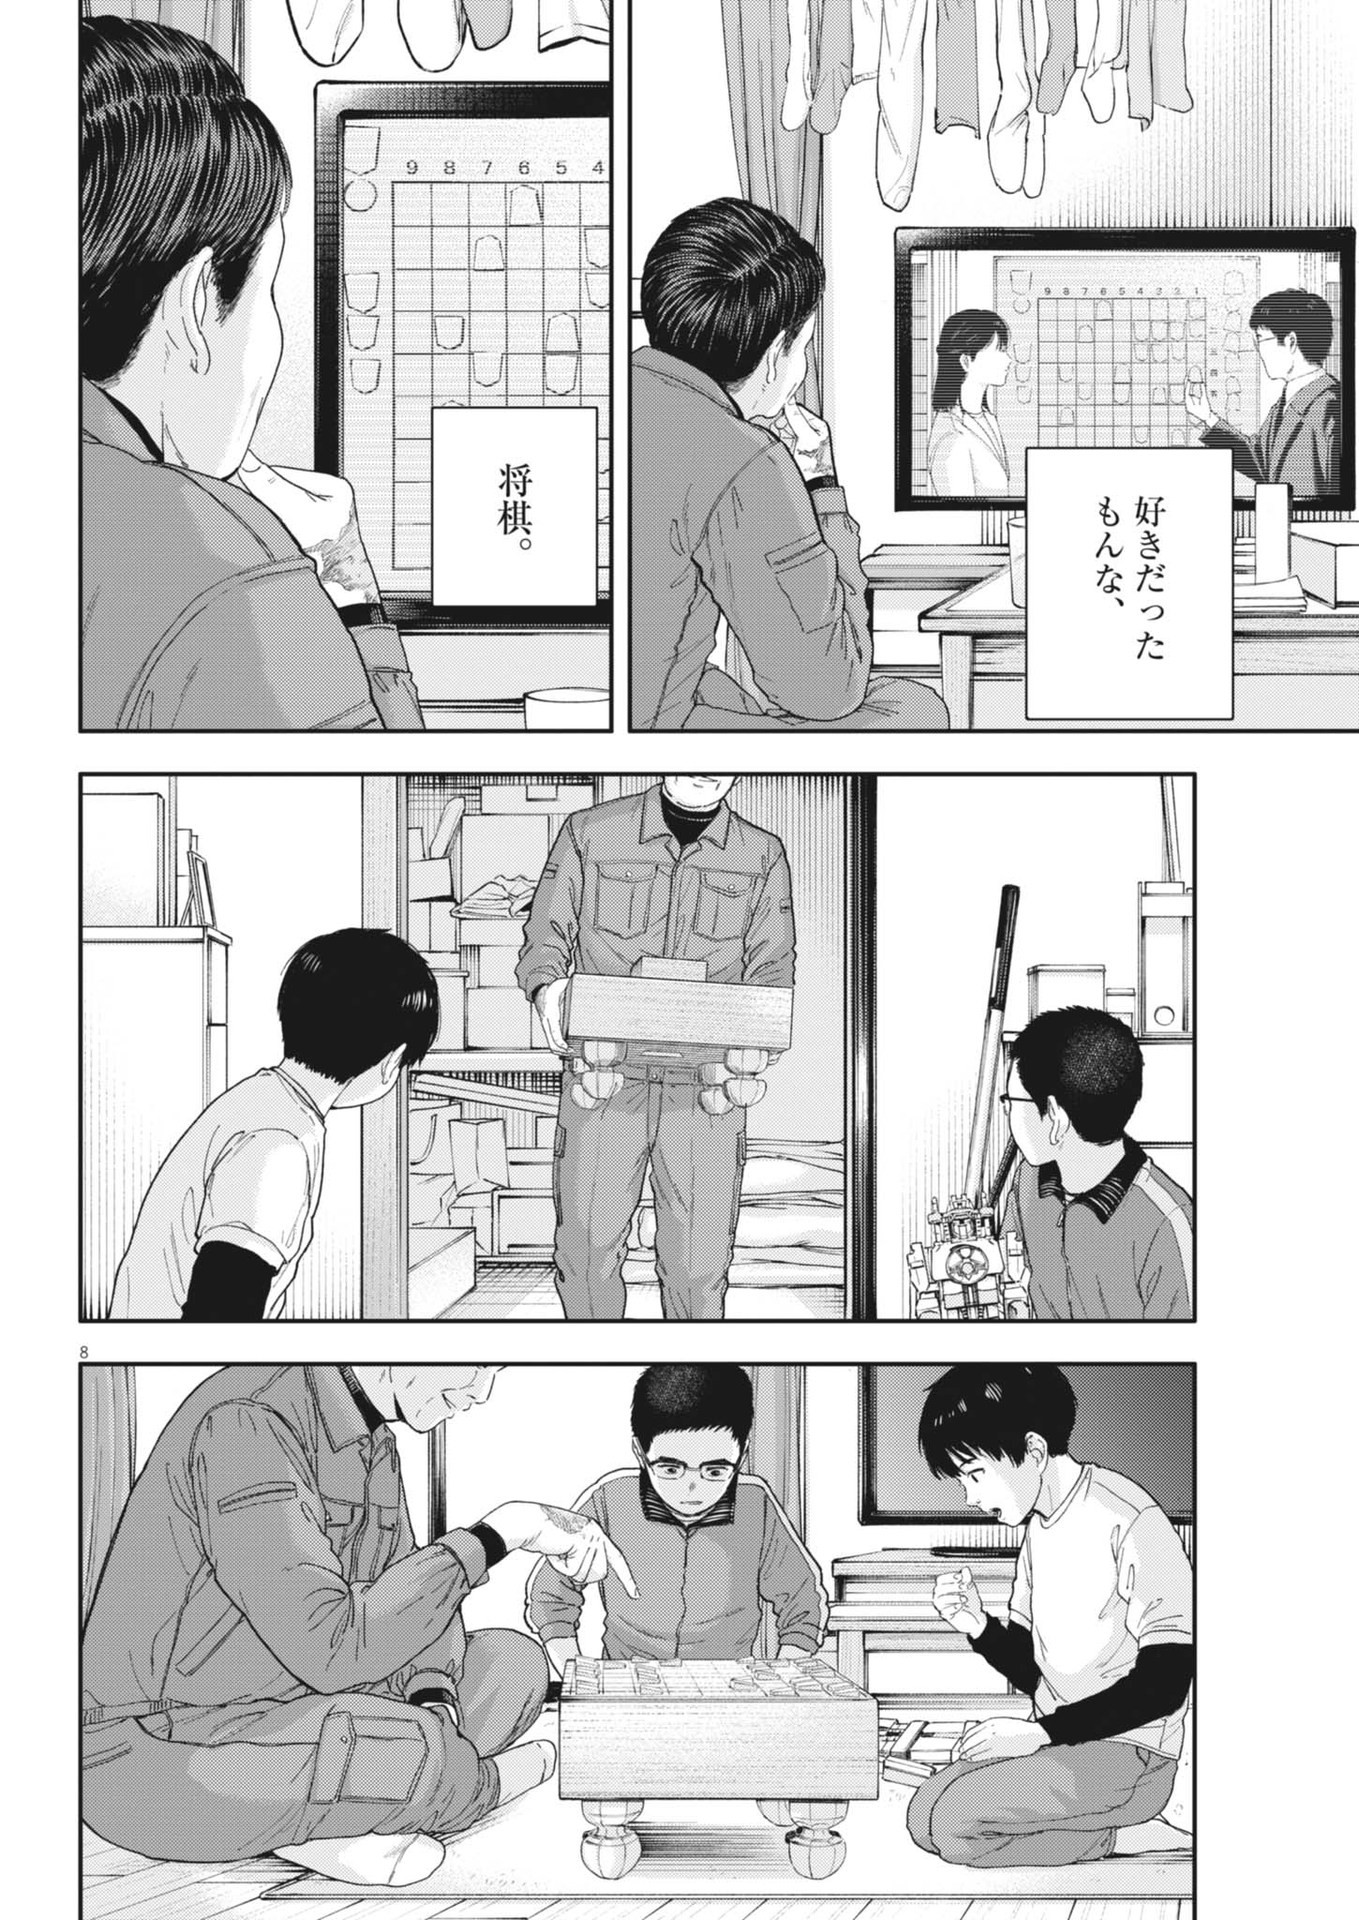 Yumenashi-sensei no Shinroshidou - Chapter 27 - Page 8